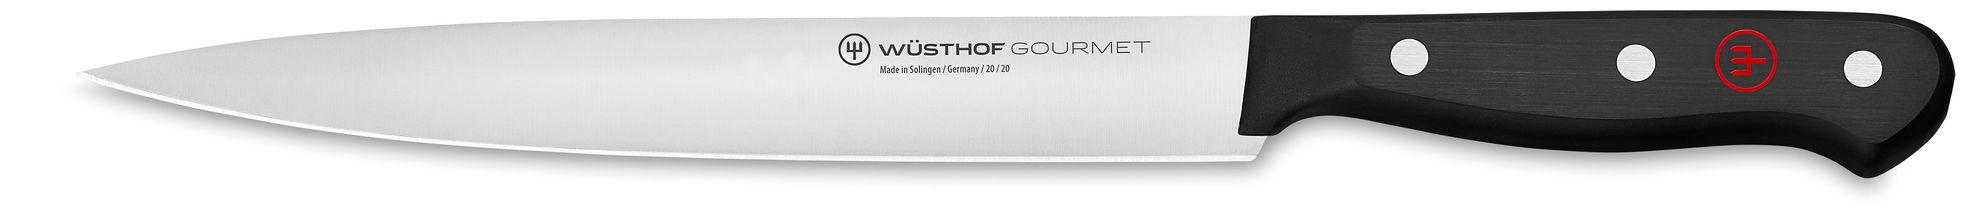 Couteau à viande Wusthof Gourmet 20 cm